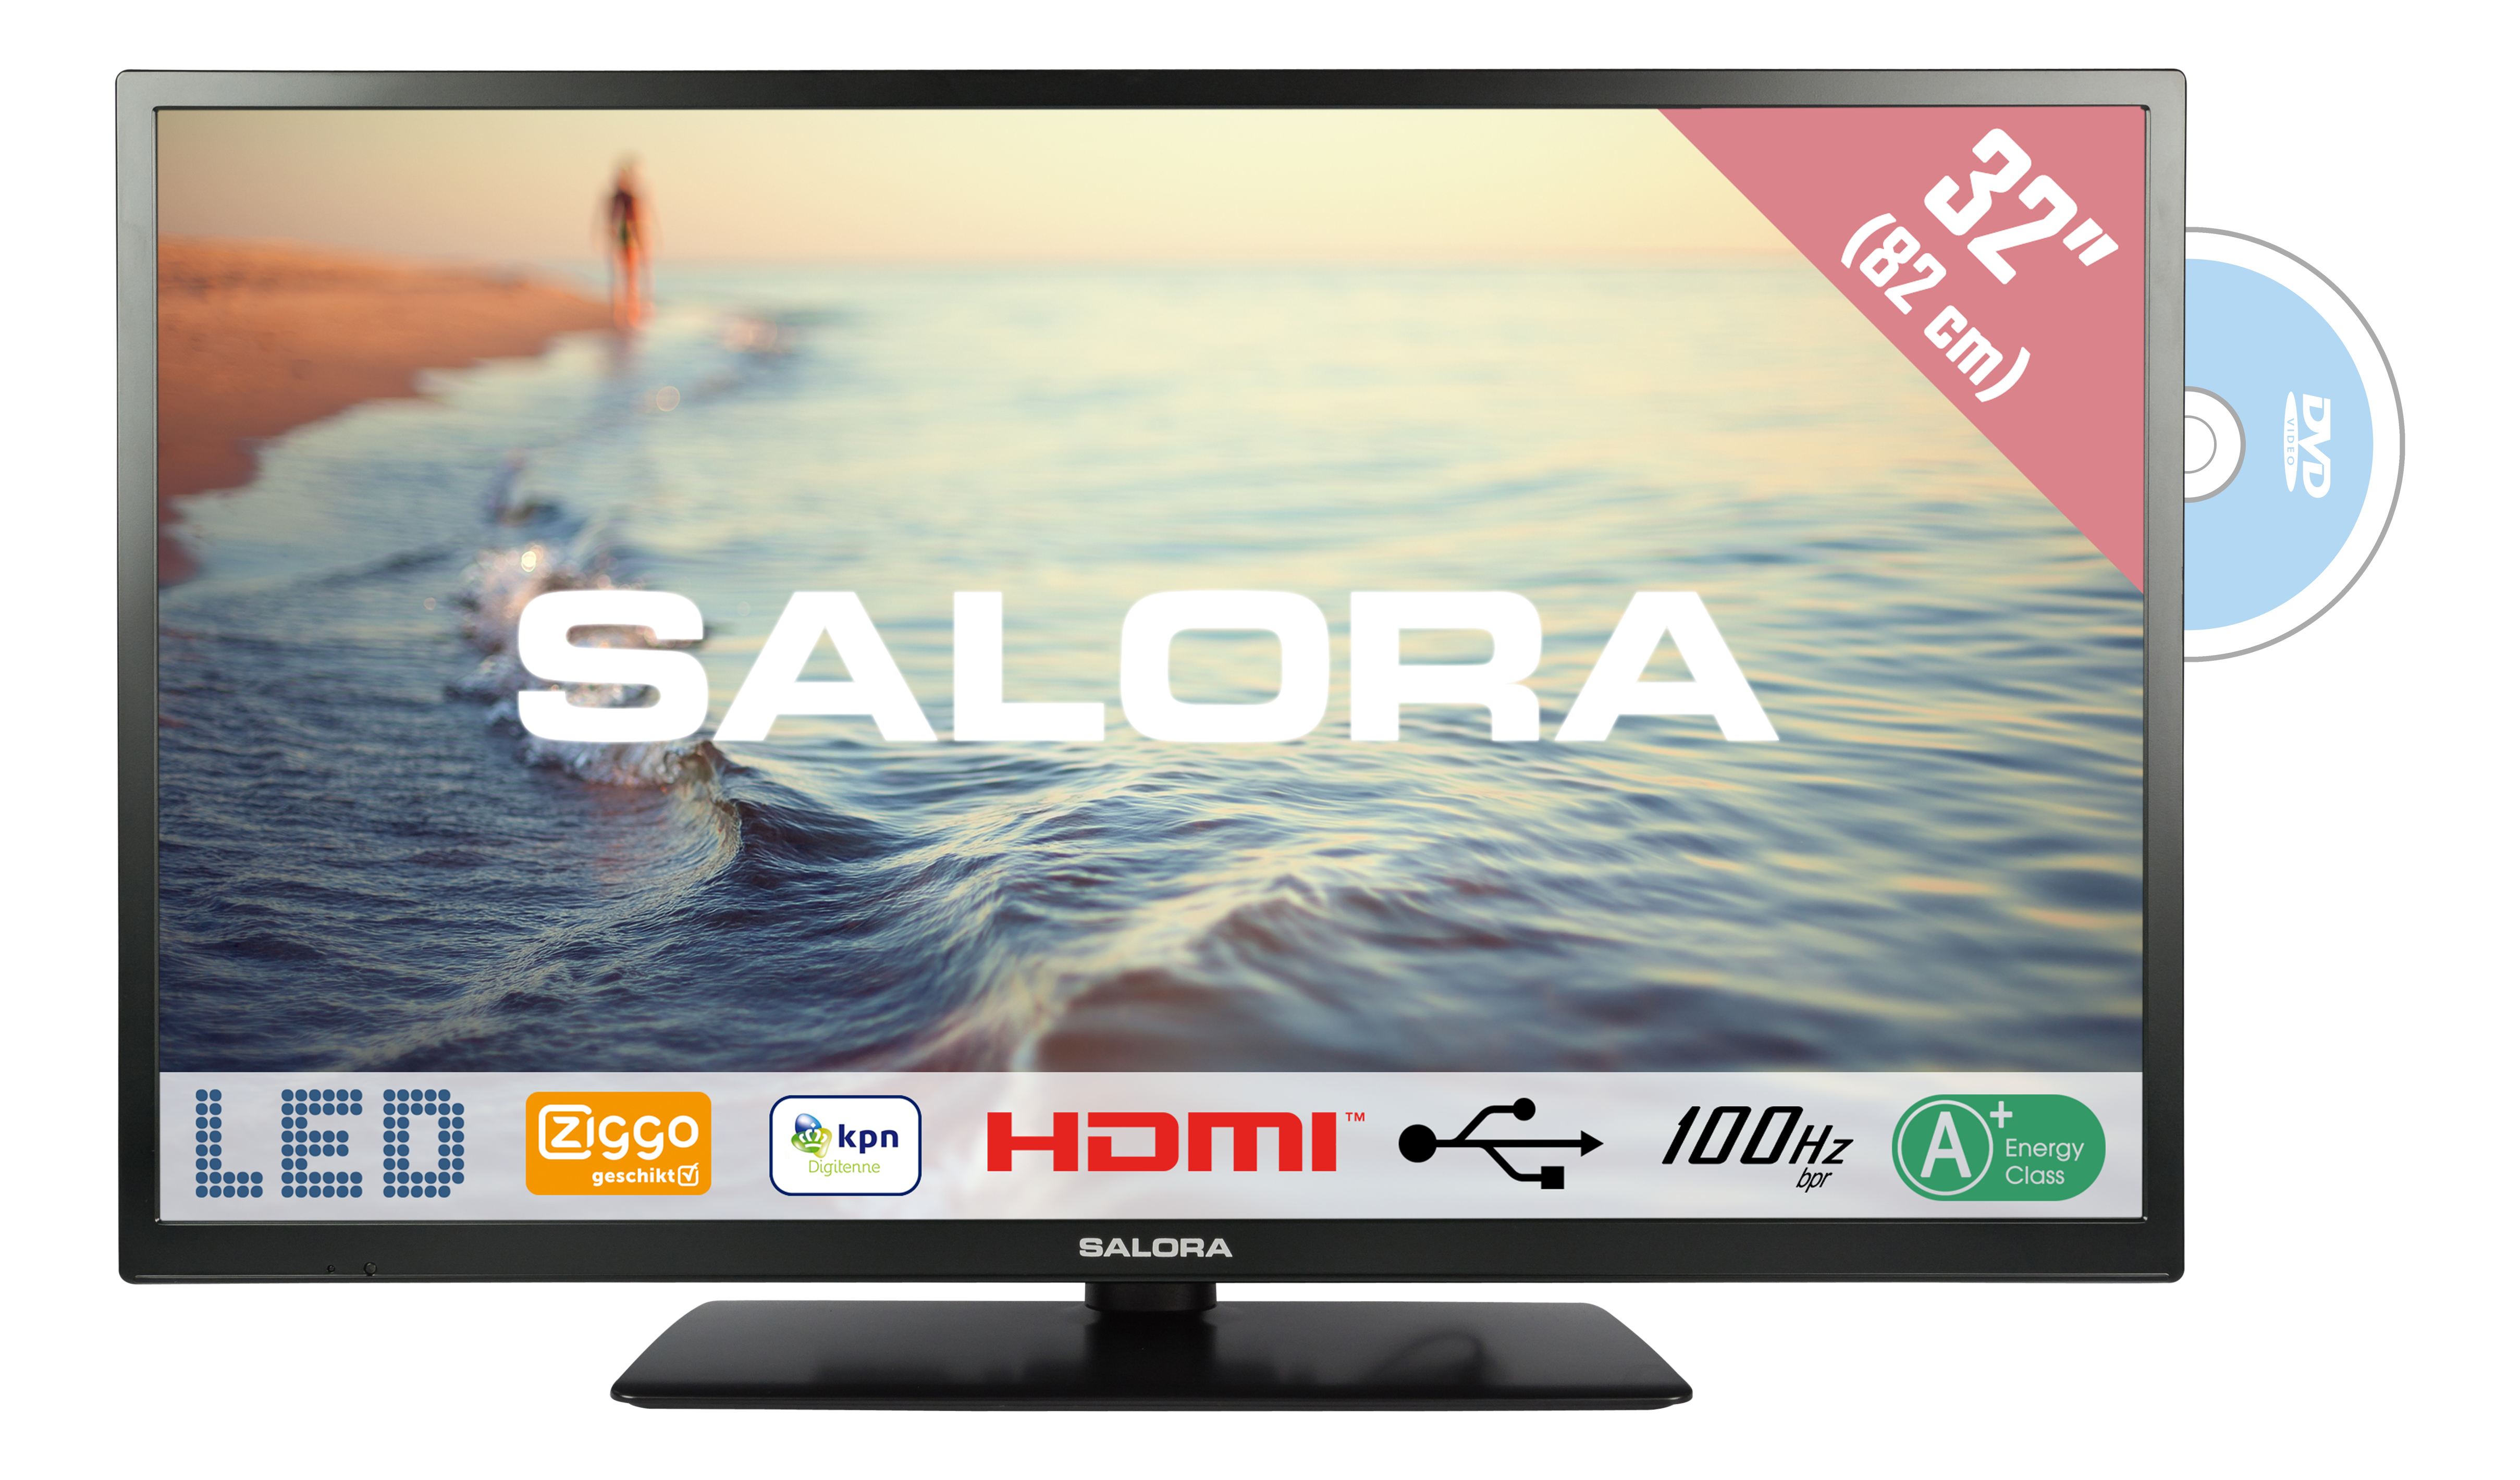 Salora 5000 series 32HDB5005 TV